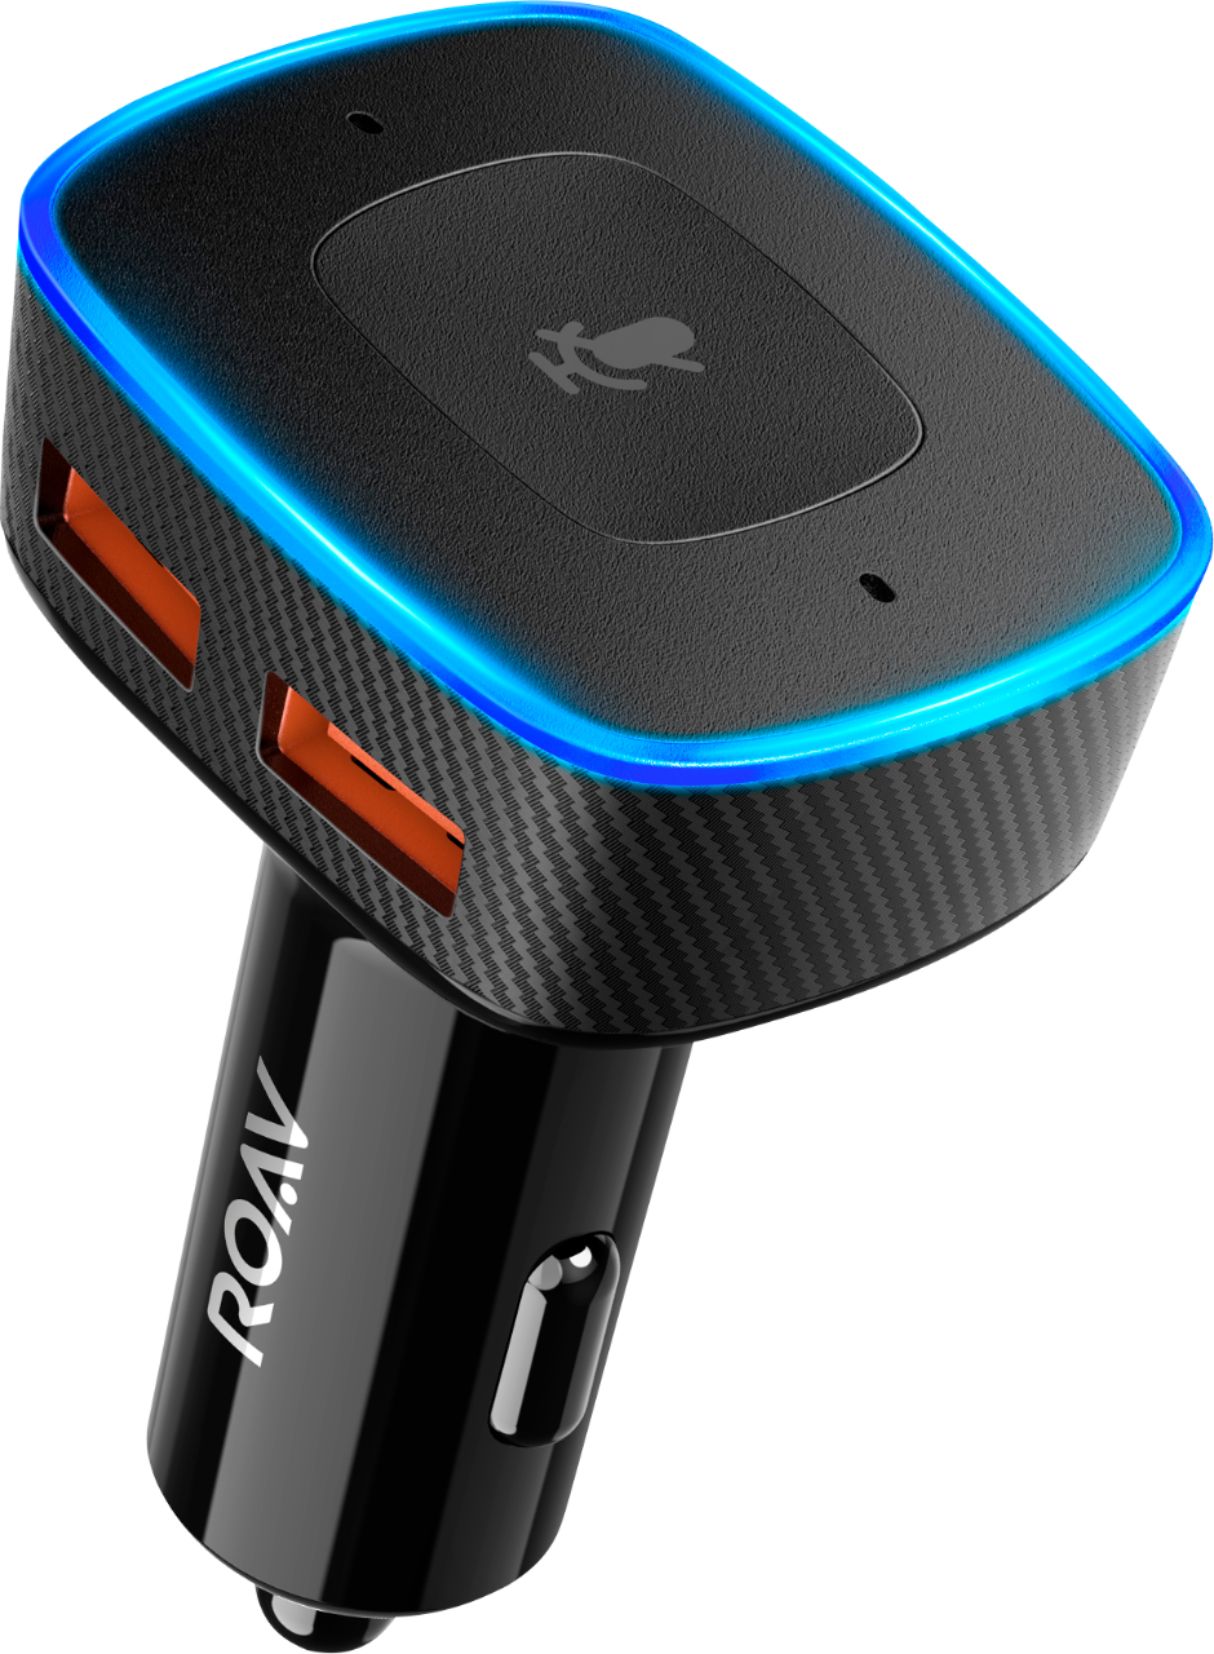 Anker ROAV Viva Pro Alexa Enabled 2-Port USB Vehicle  - Best Buy